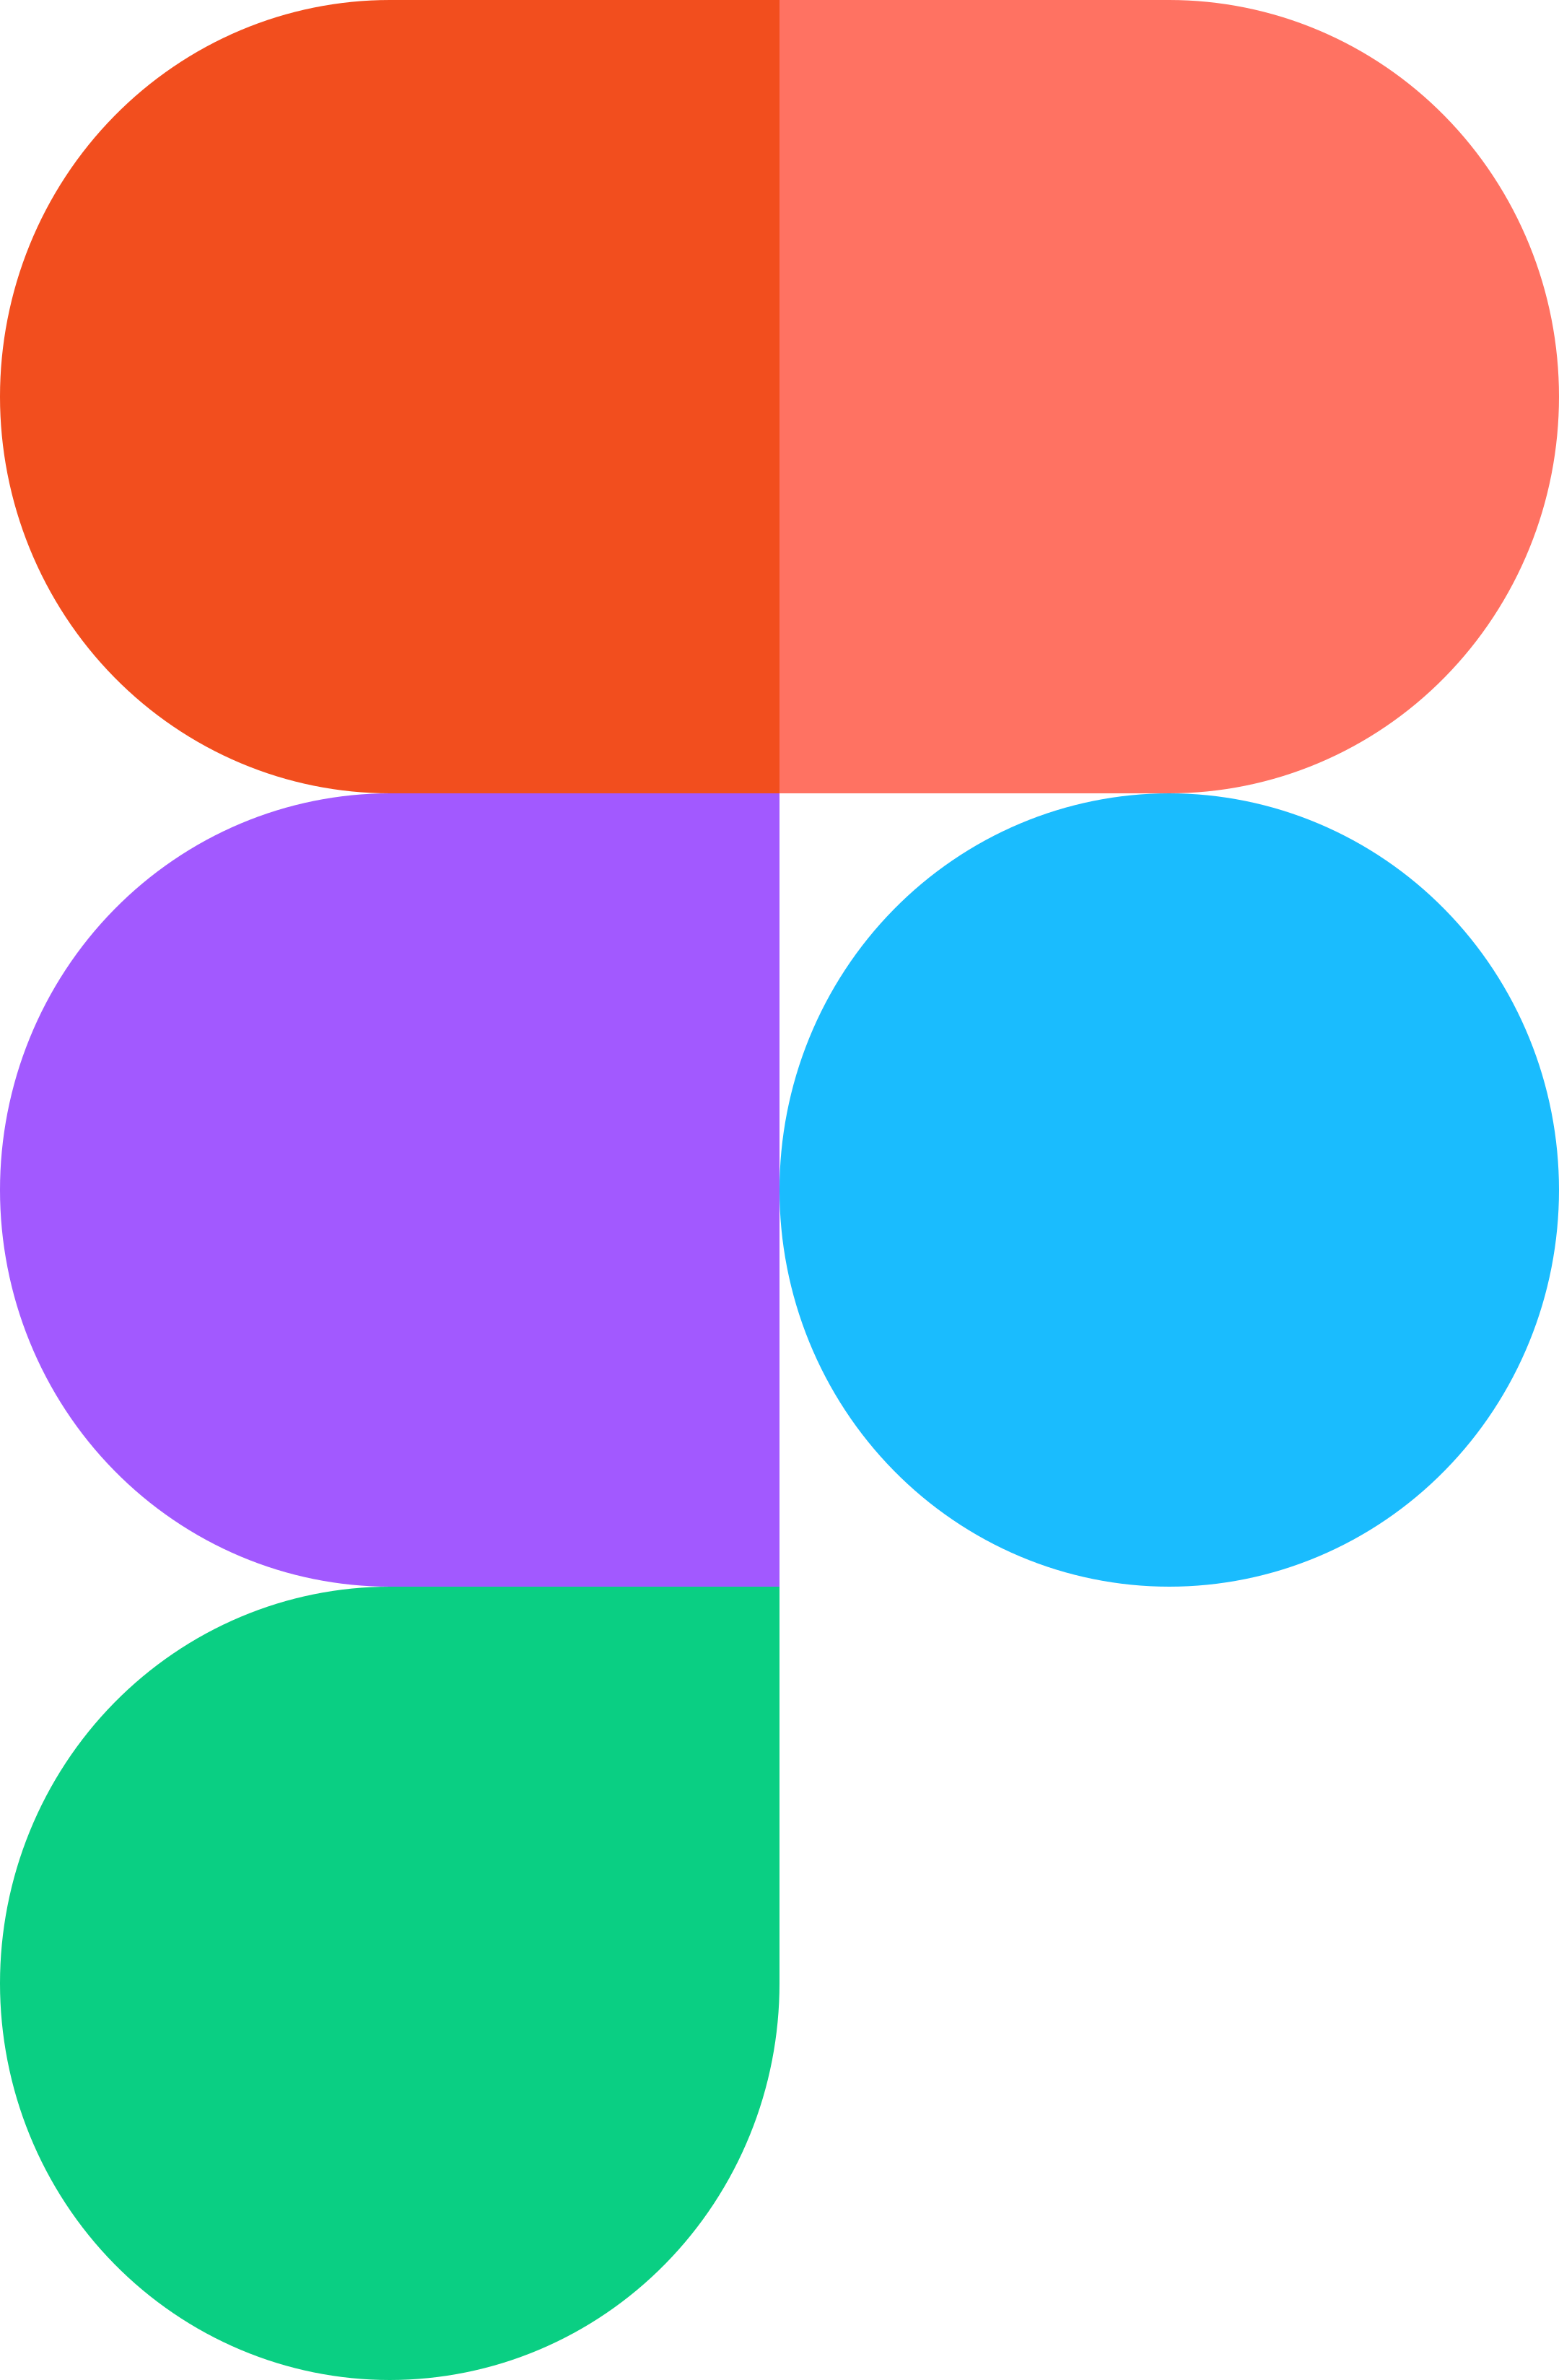 figma logo 1 - Figma Logo